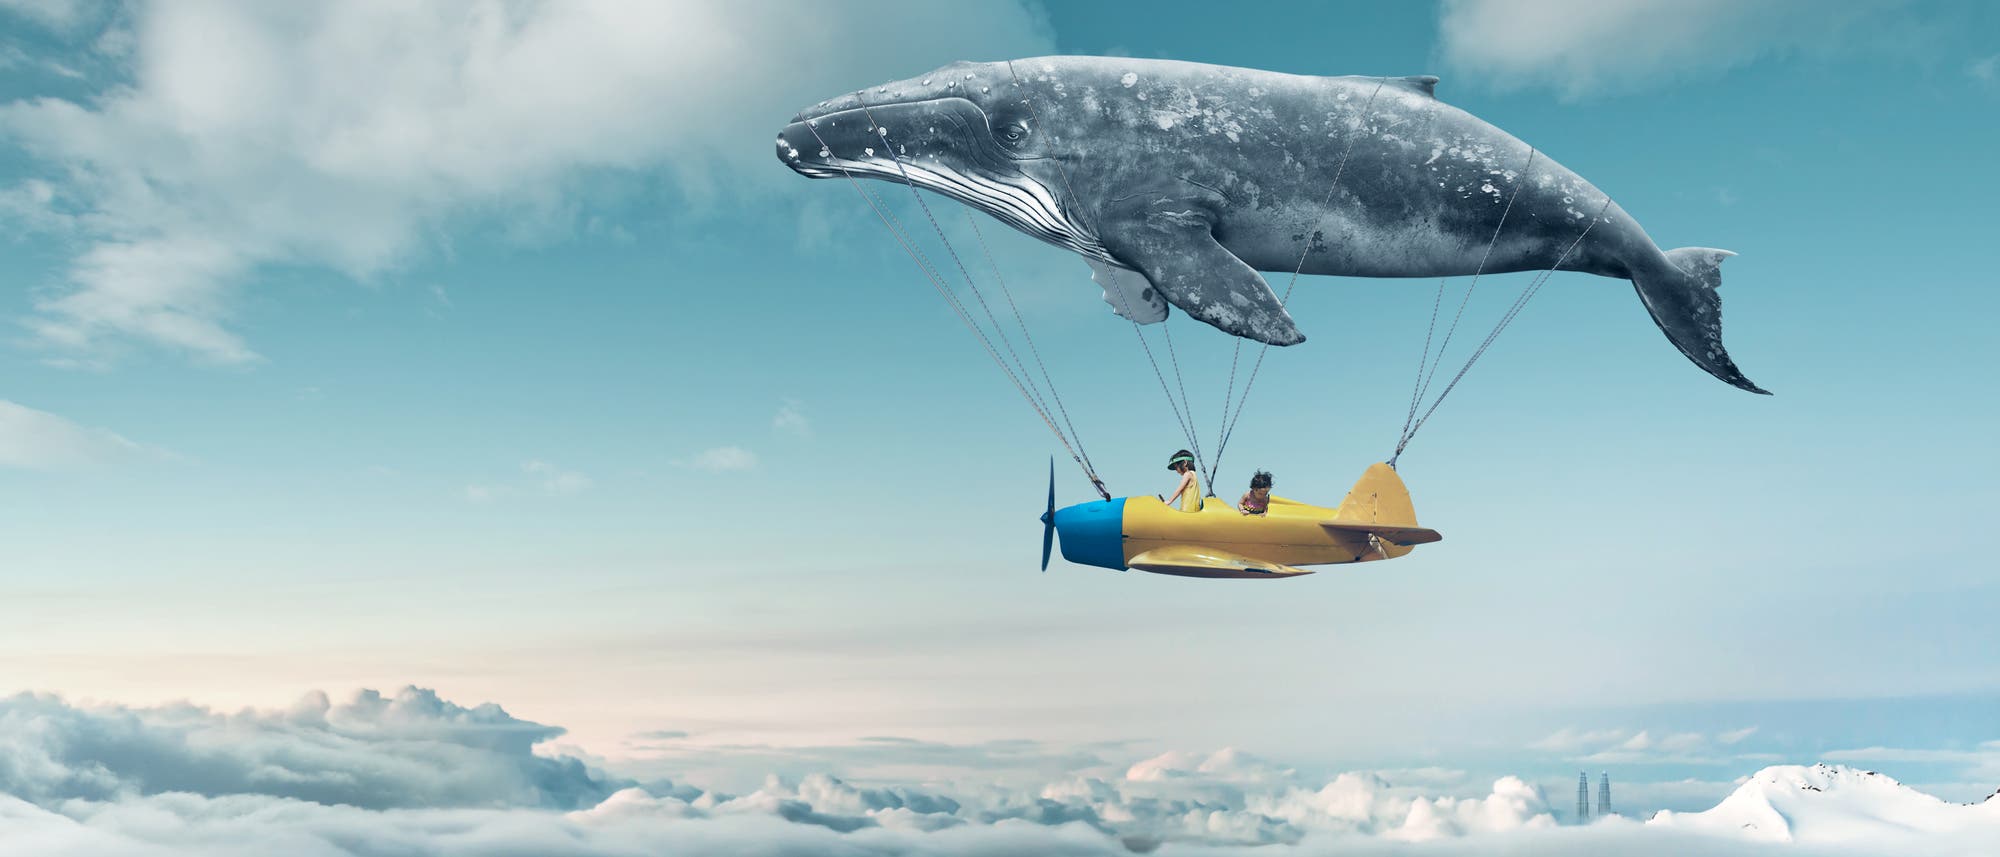 Traumwelt: Kinder in einem Flugzeug über den Wolken, das an einem fliegenden Wal hängt